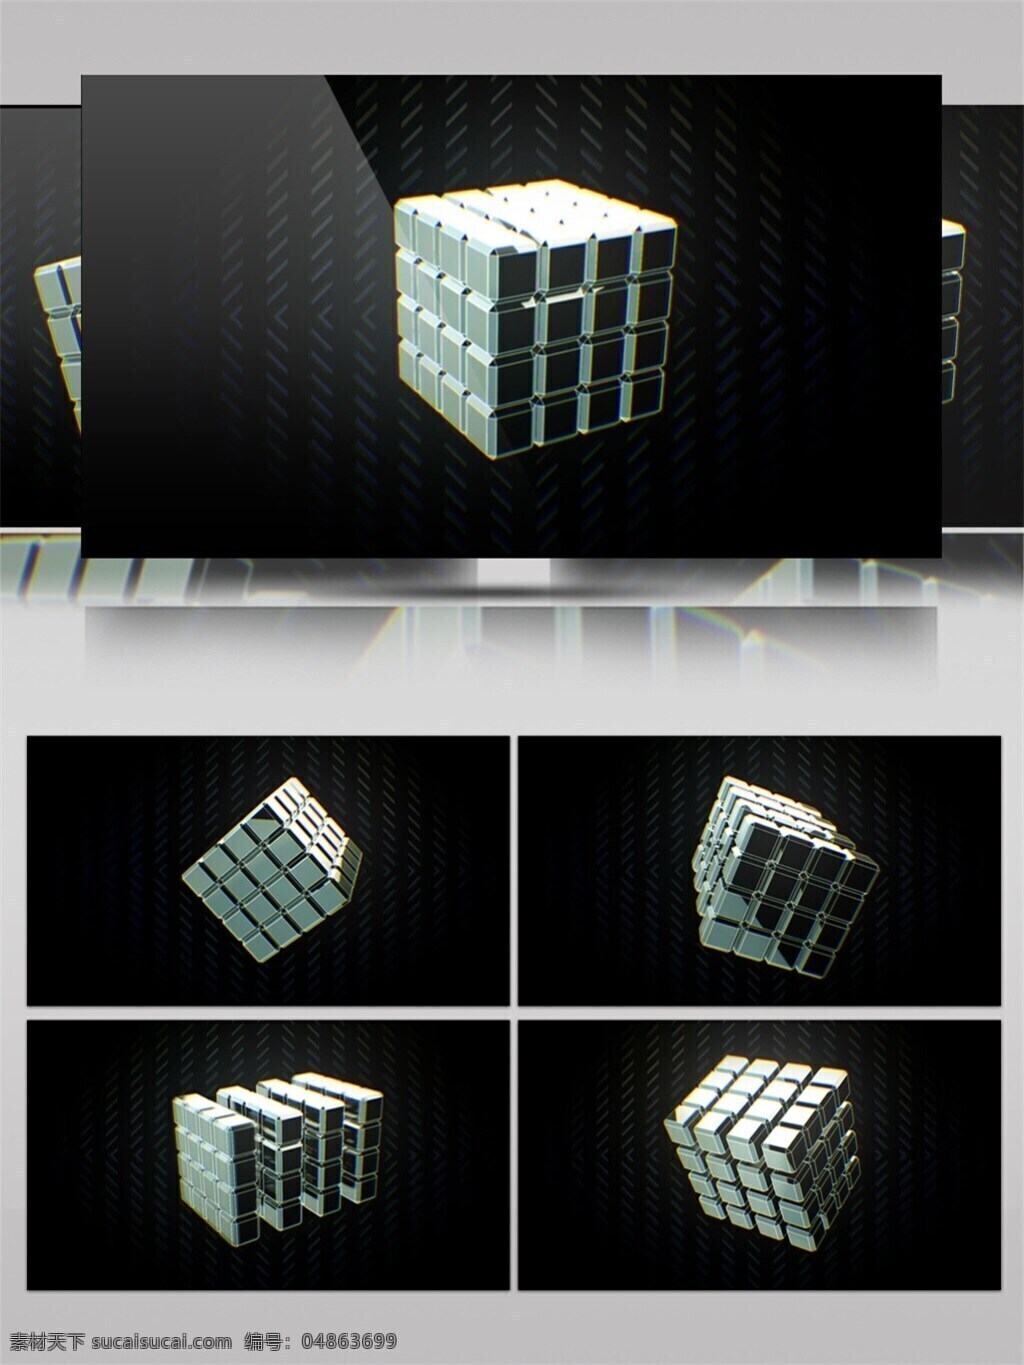 银色 魔方 动态 视频 立体魔方 华丽大气 创意设计 led 闪烁 灯光 3d视频素材 选录银色 华丽光转